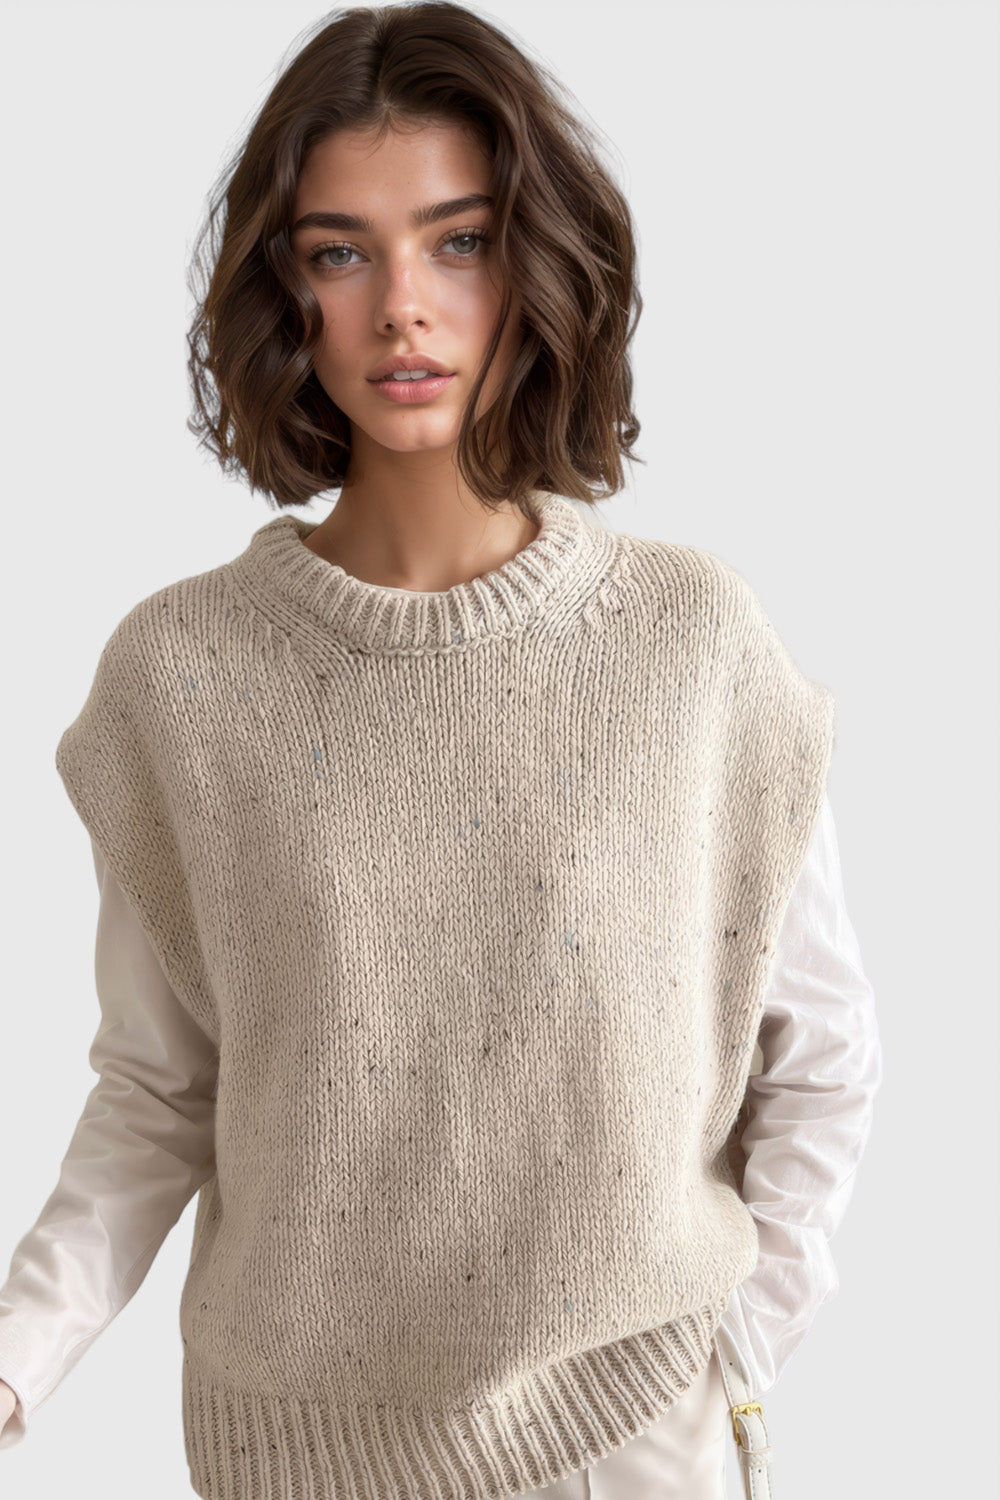 Knitted Waistcoat Sweater - Beige